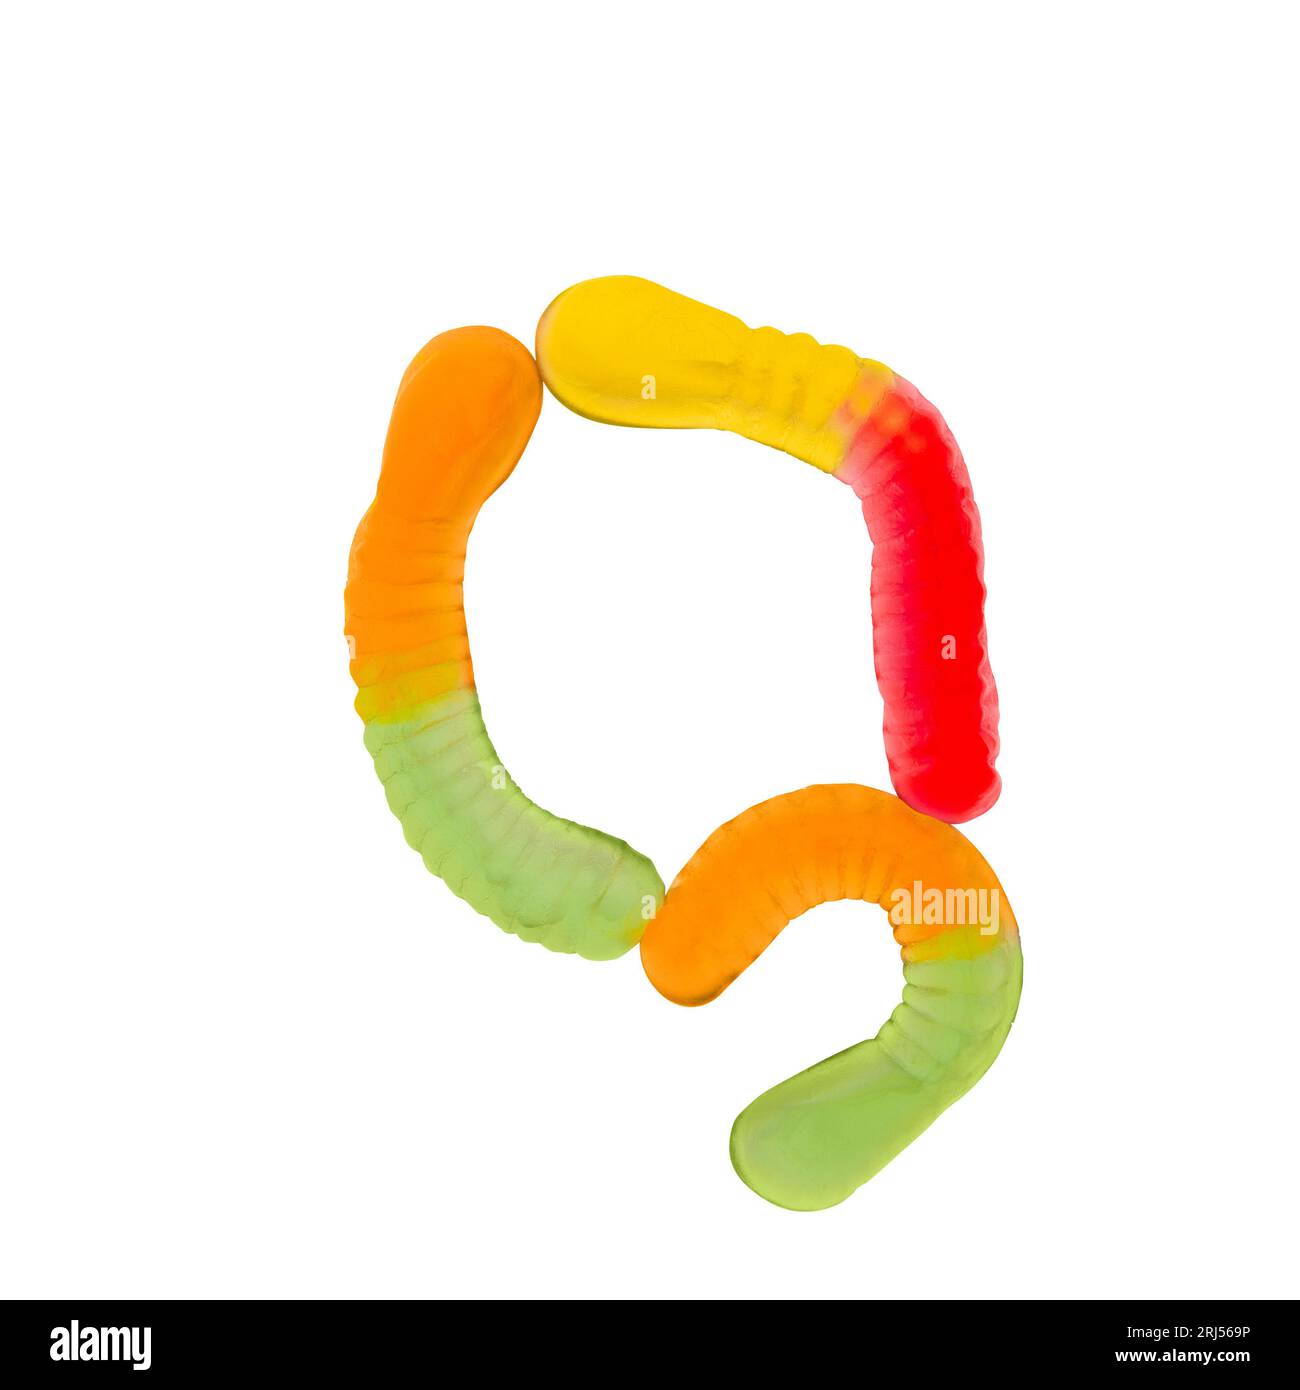 Lettre Q faite de vers gummi multicolores et isolée sur fond blanc pur. Concept d'alphabet alimentaire. Une lettre de l'ensemble de la police des aliments sucrés facile Banque D'Images